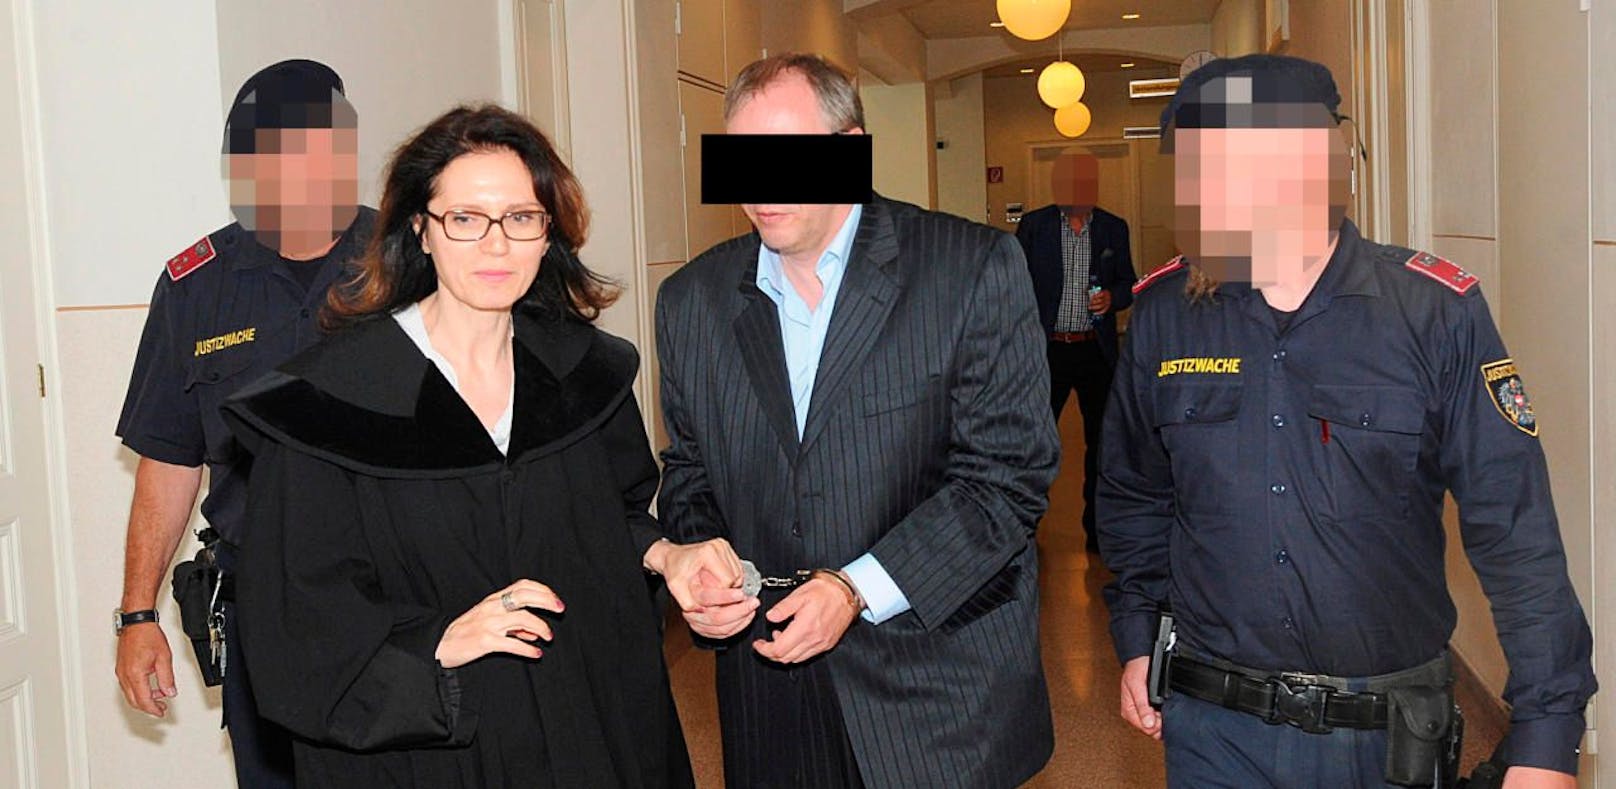 Axt-Killer Gerald B. mit Anwältin Astrid Wagner am Weg in den Schwurgerichtssaal.